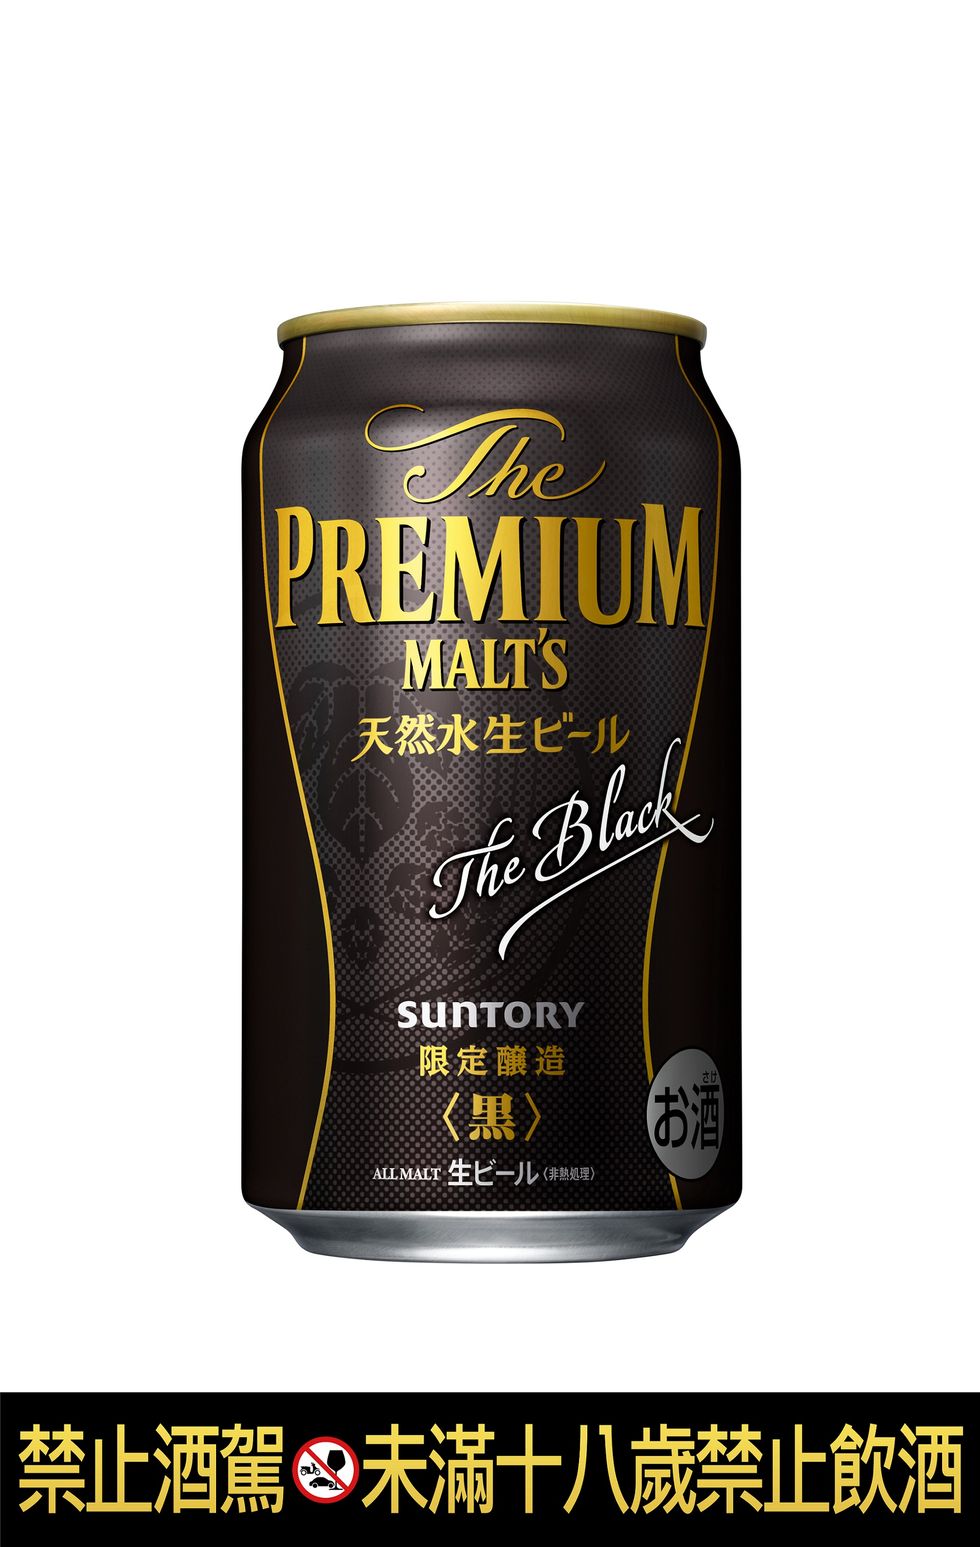 三得利頂級黑啤酒 the premium malt’s the black